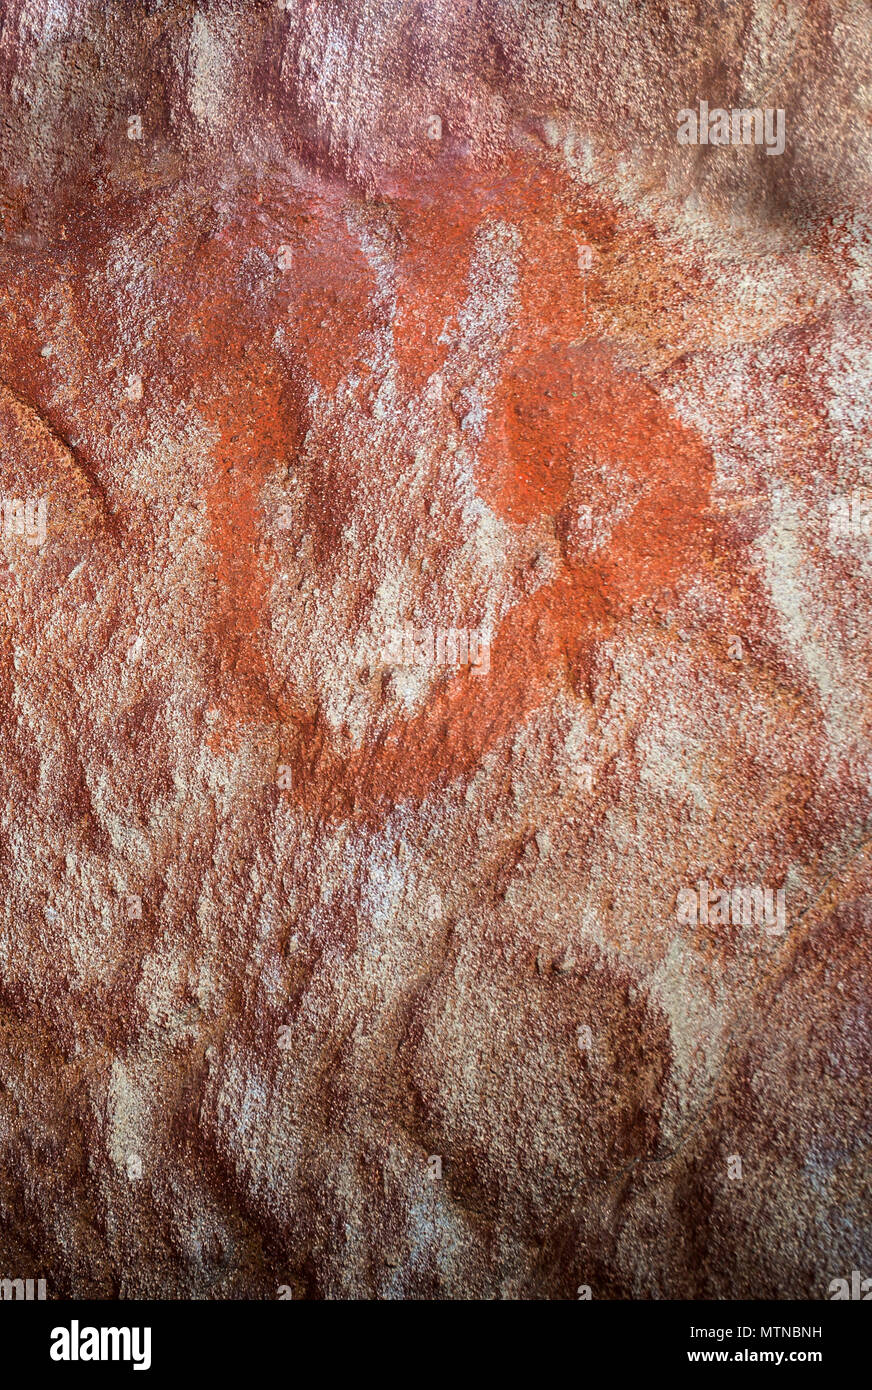 Caceres, Espagne - Mai 27th, 2018 : la grotte de Maltravieso réplique avec les néandertaliens quatre doigts part-imprime, Caceres, Espagne Banque D'Images